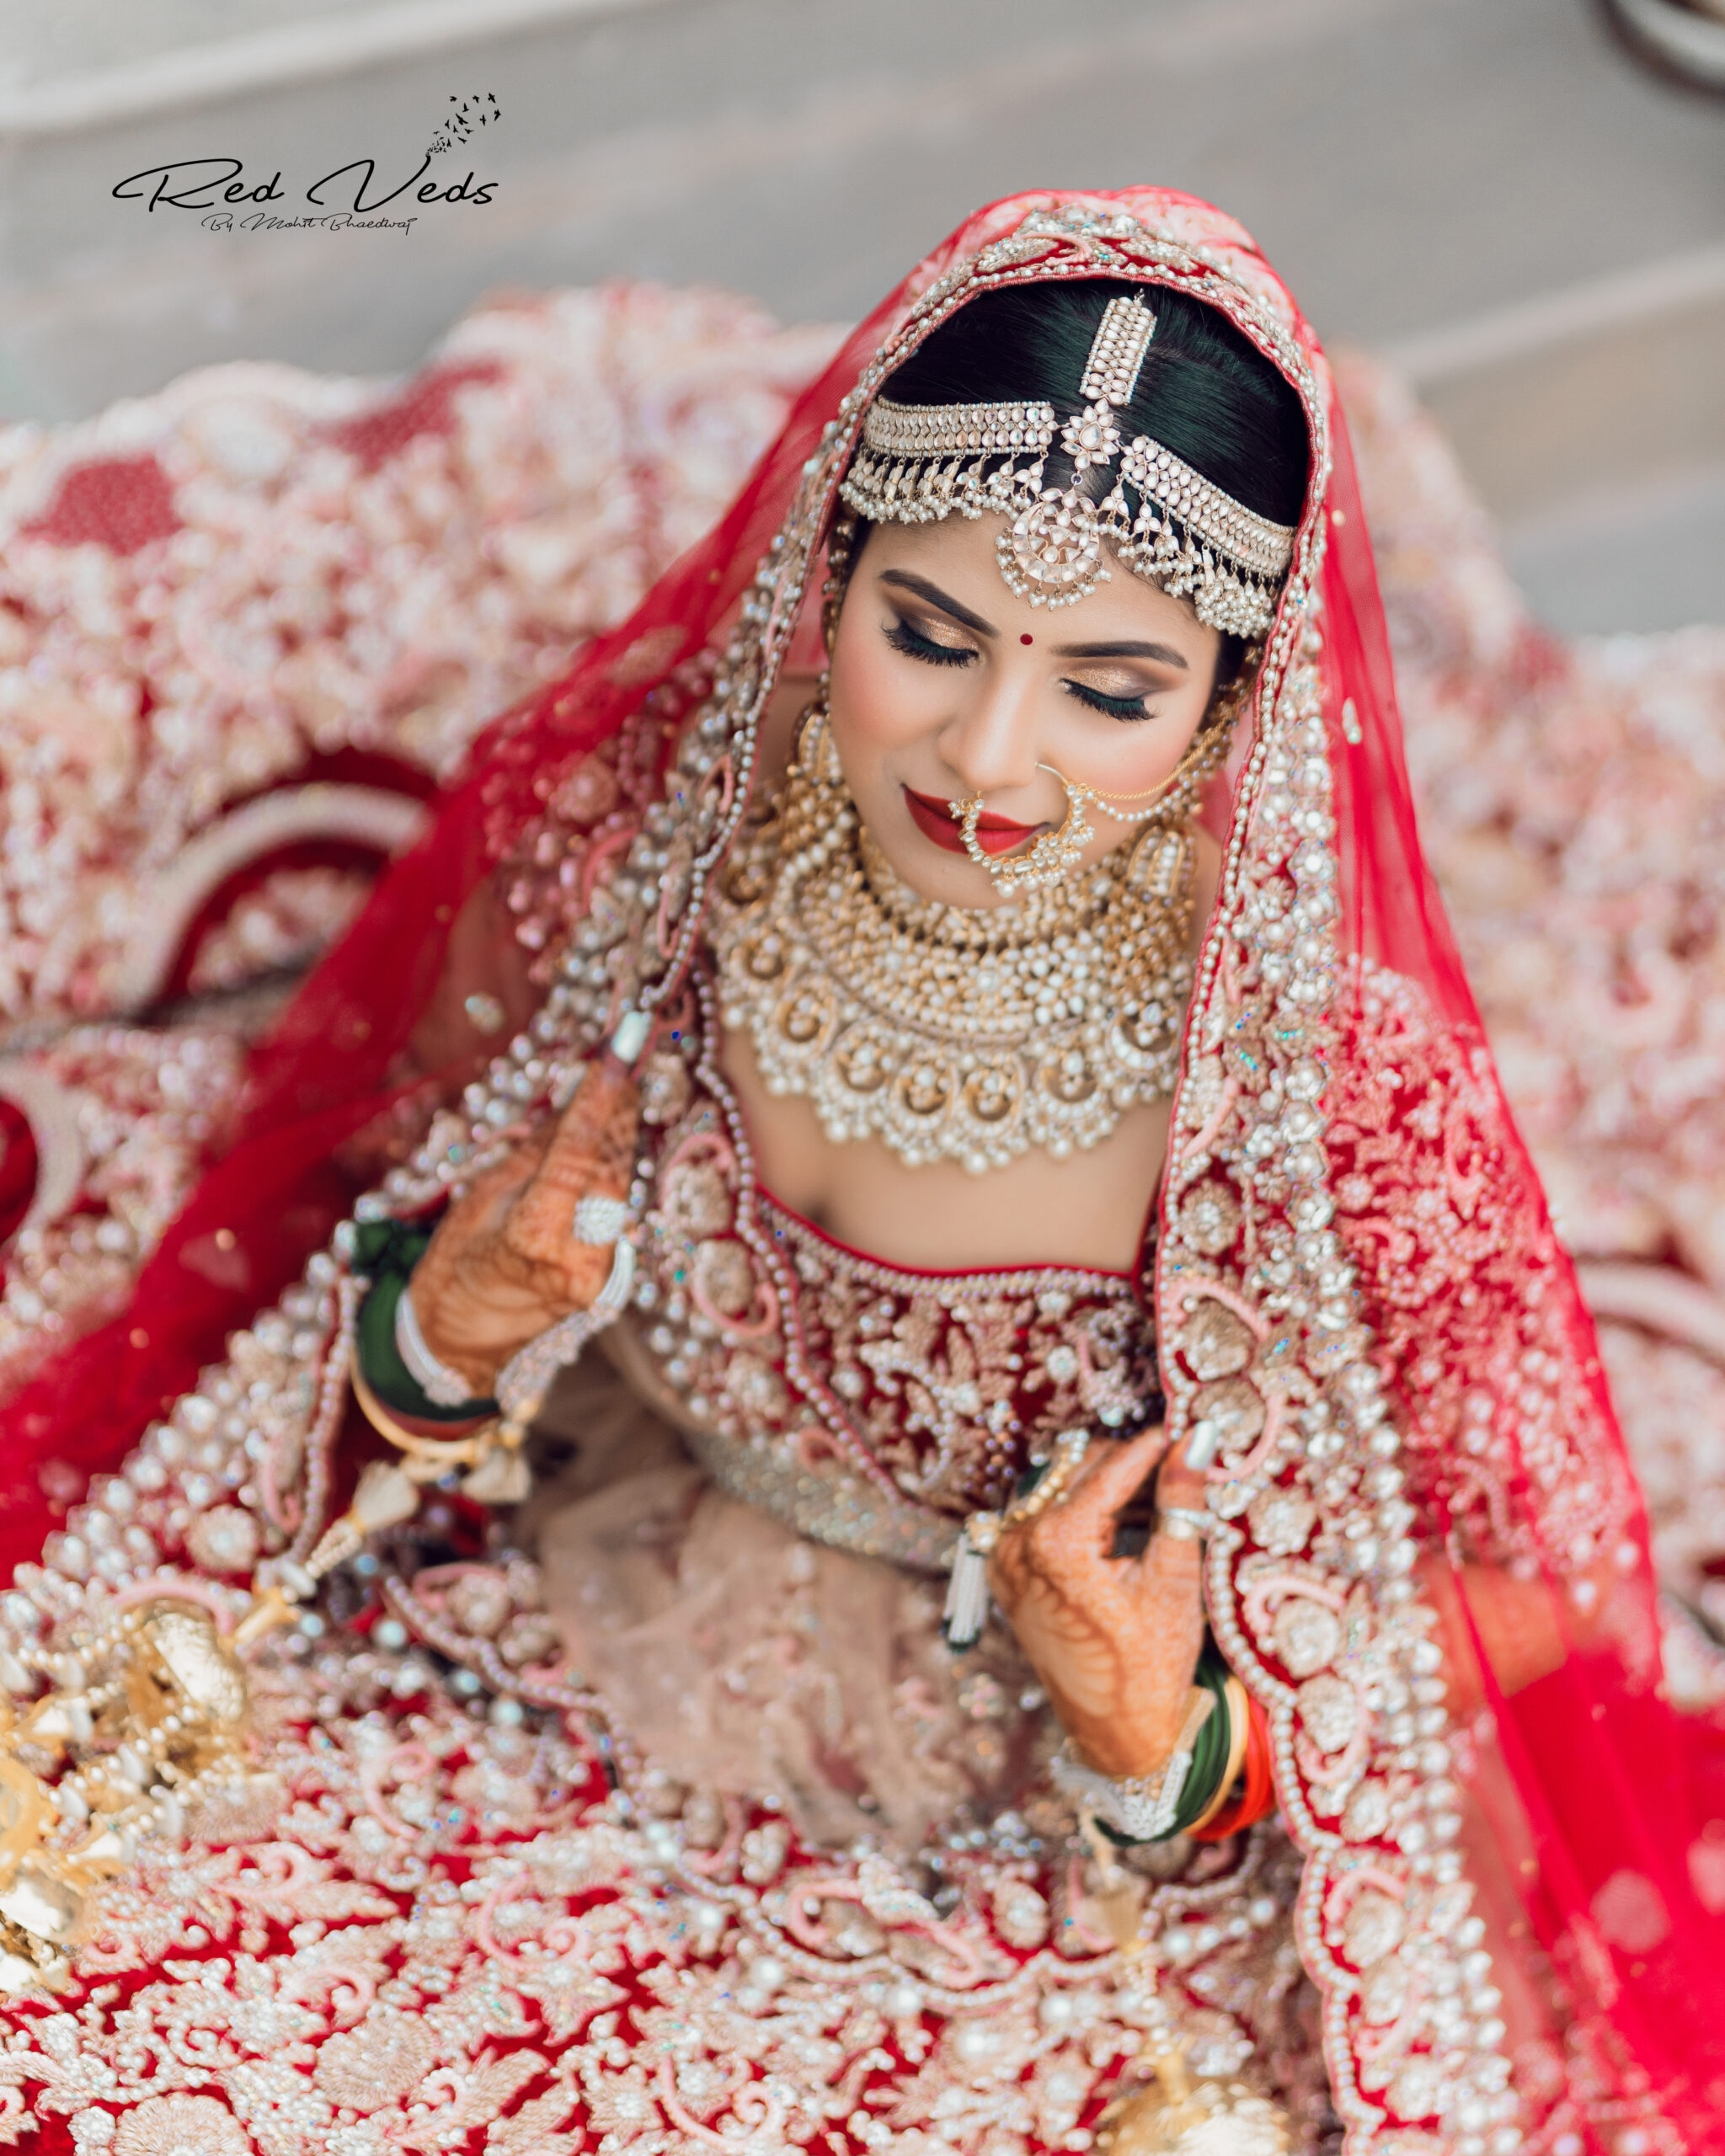 अपनी शादी के एल्बम के लिए इन खूबसूरत पलों को कैमरे में करवाएं कैद | Capture  these beautiful moments for your wedding album in hindi - Hindi Boldsky